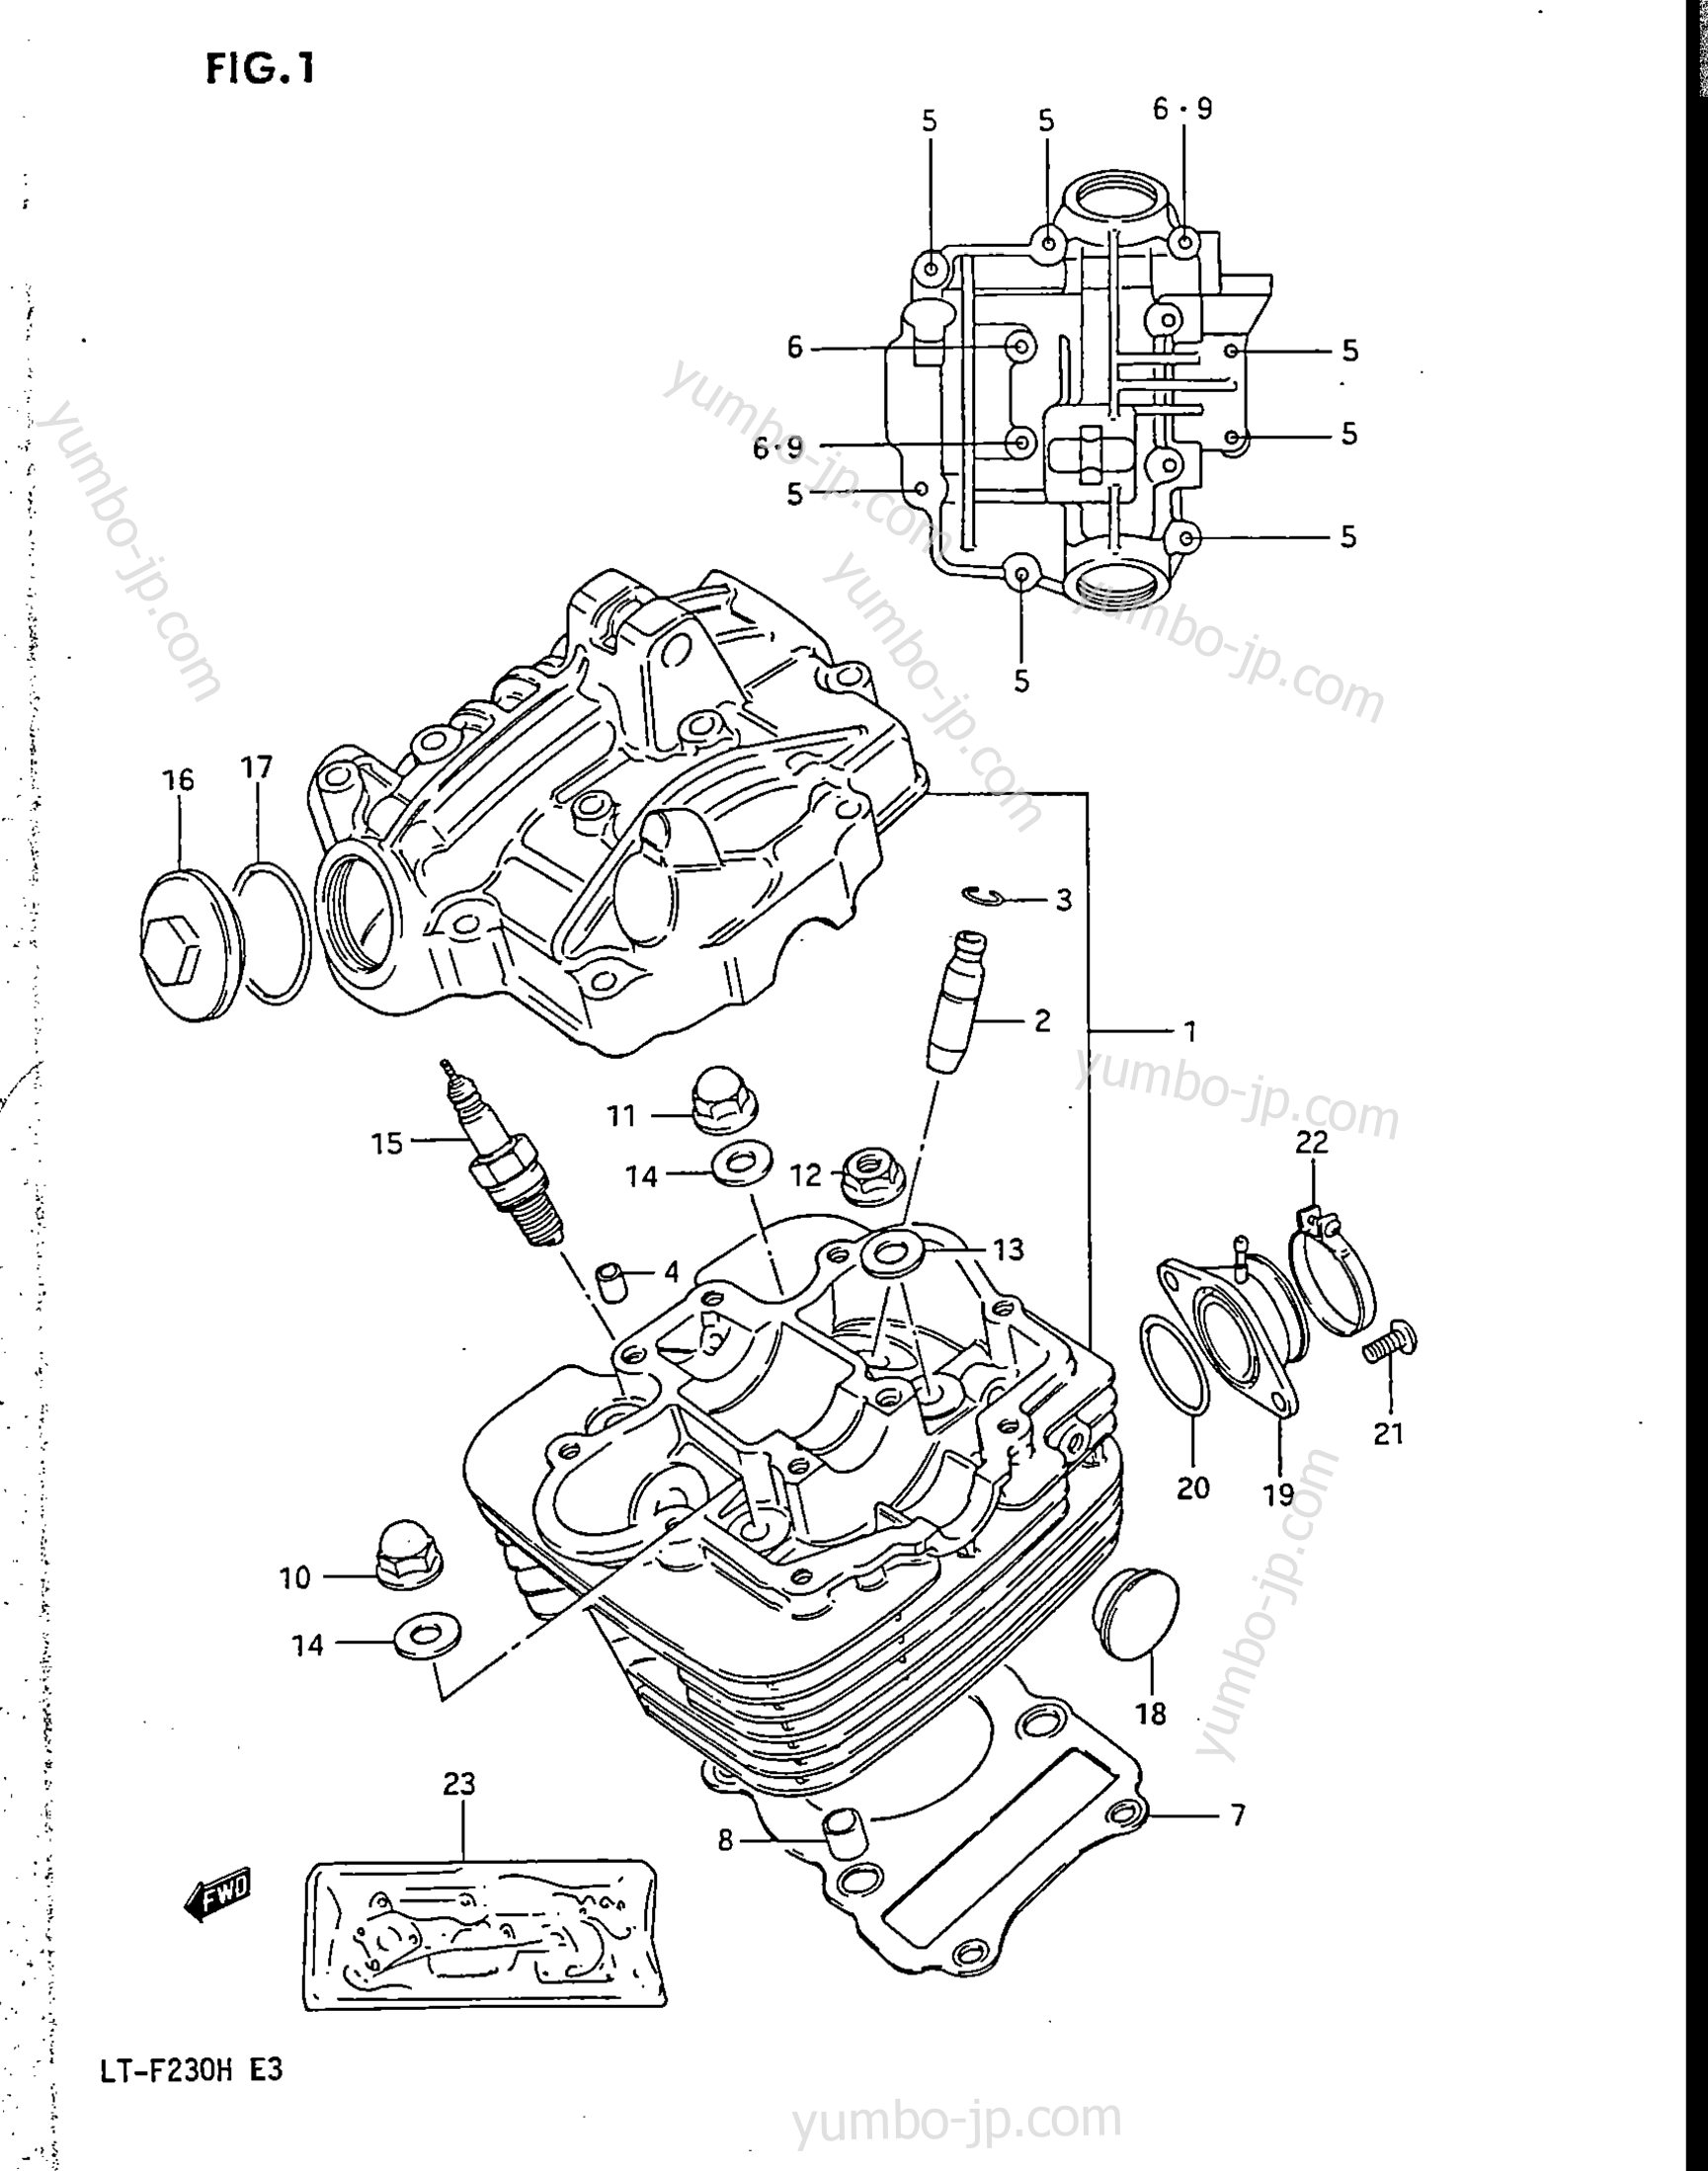 CYLINDER HEAD for ATVs SUZUKI LT-F230 1986 year